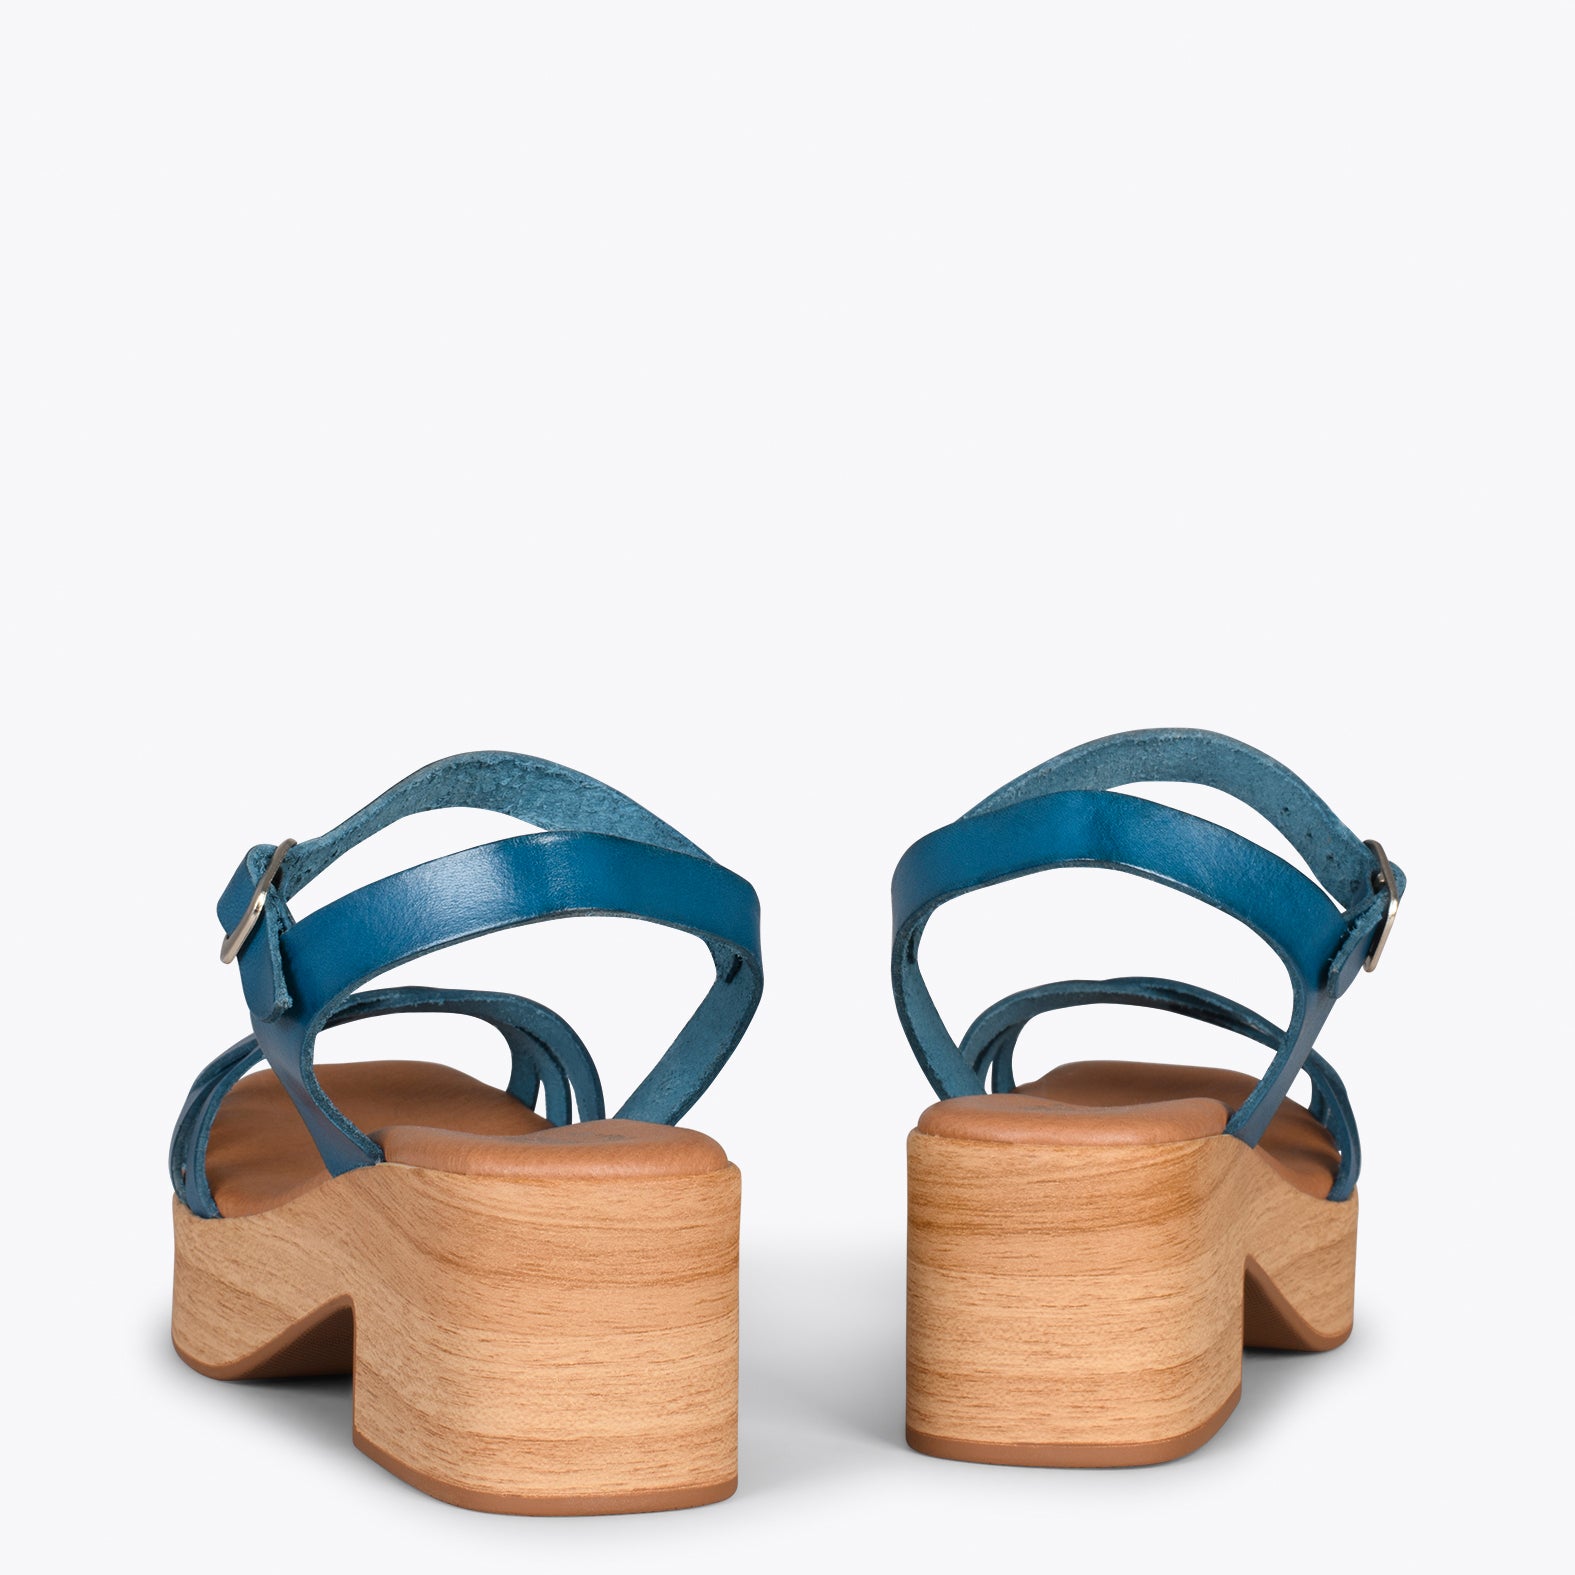 WOOD – Sandalias imitación madera con tiras AZUL